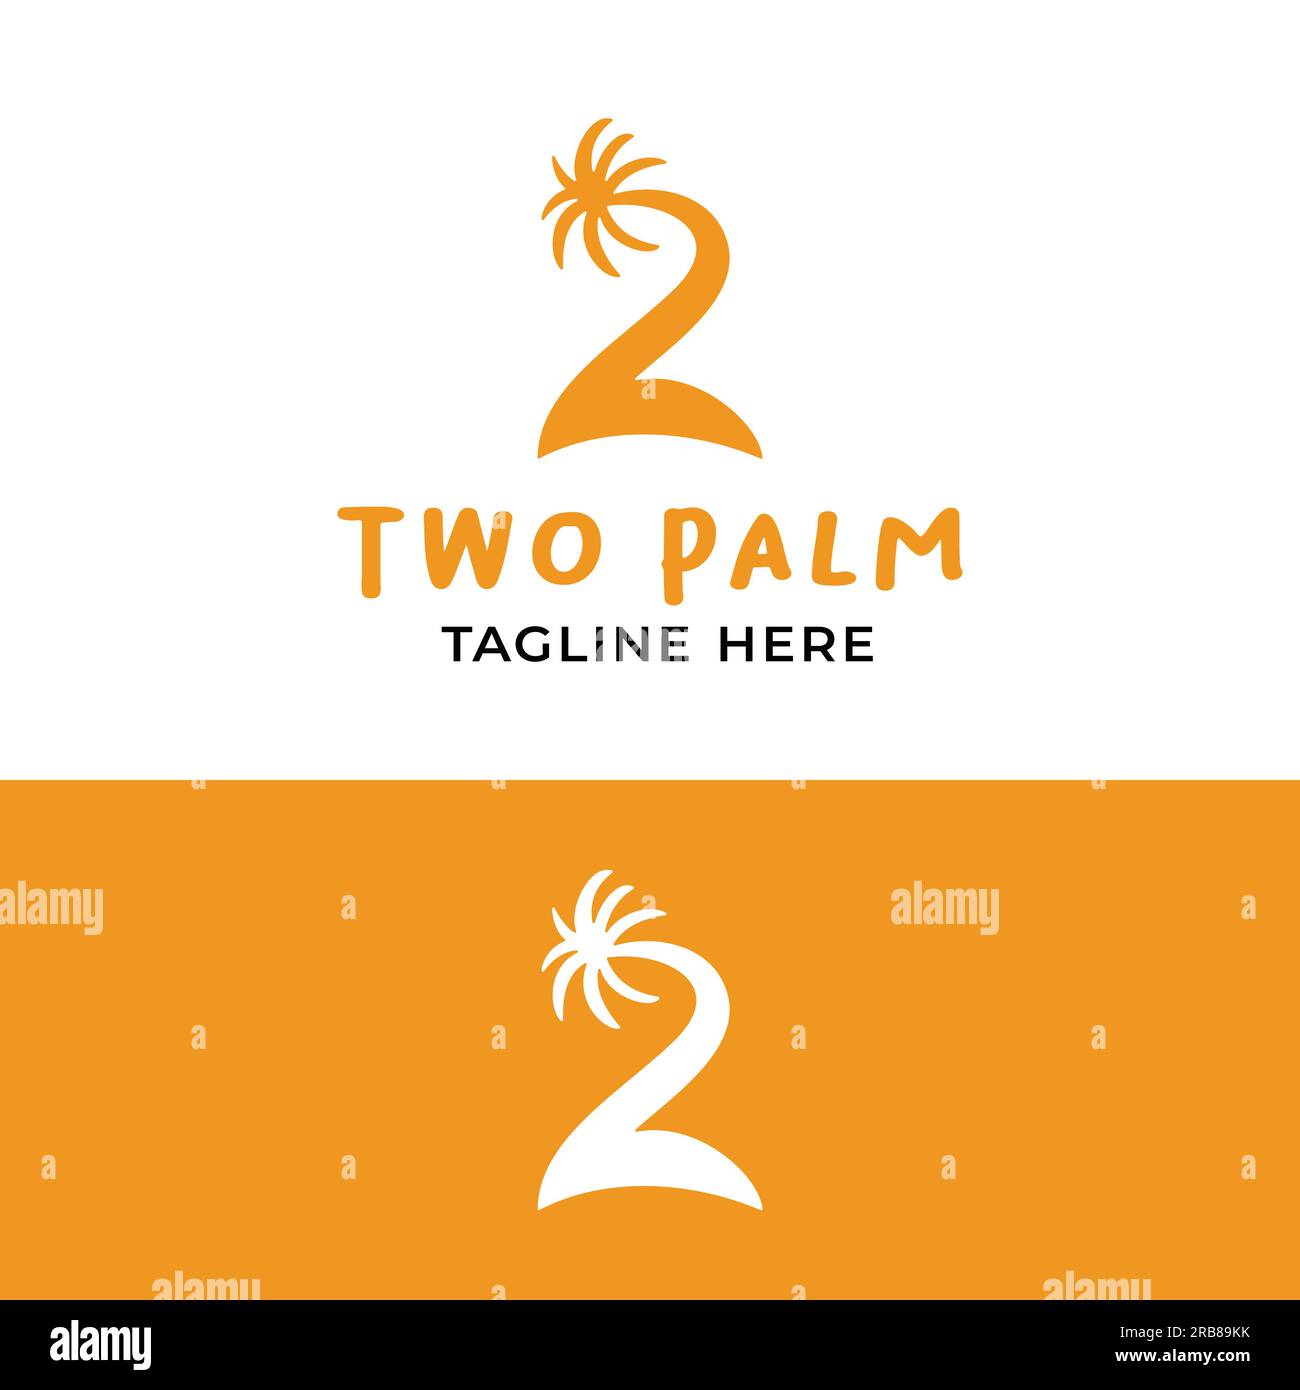 Nummer 2 zwei mit dem Symbol von Palm Tree und Island im einfachen minimalen Stil für das Strandbezogene Business Hotel Resort Restaurant Travel Tourism Logo Stock Vektor